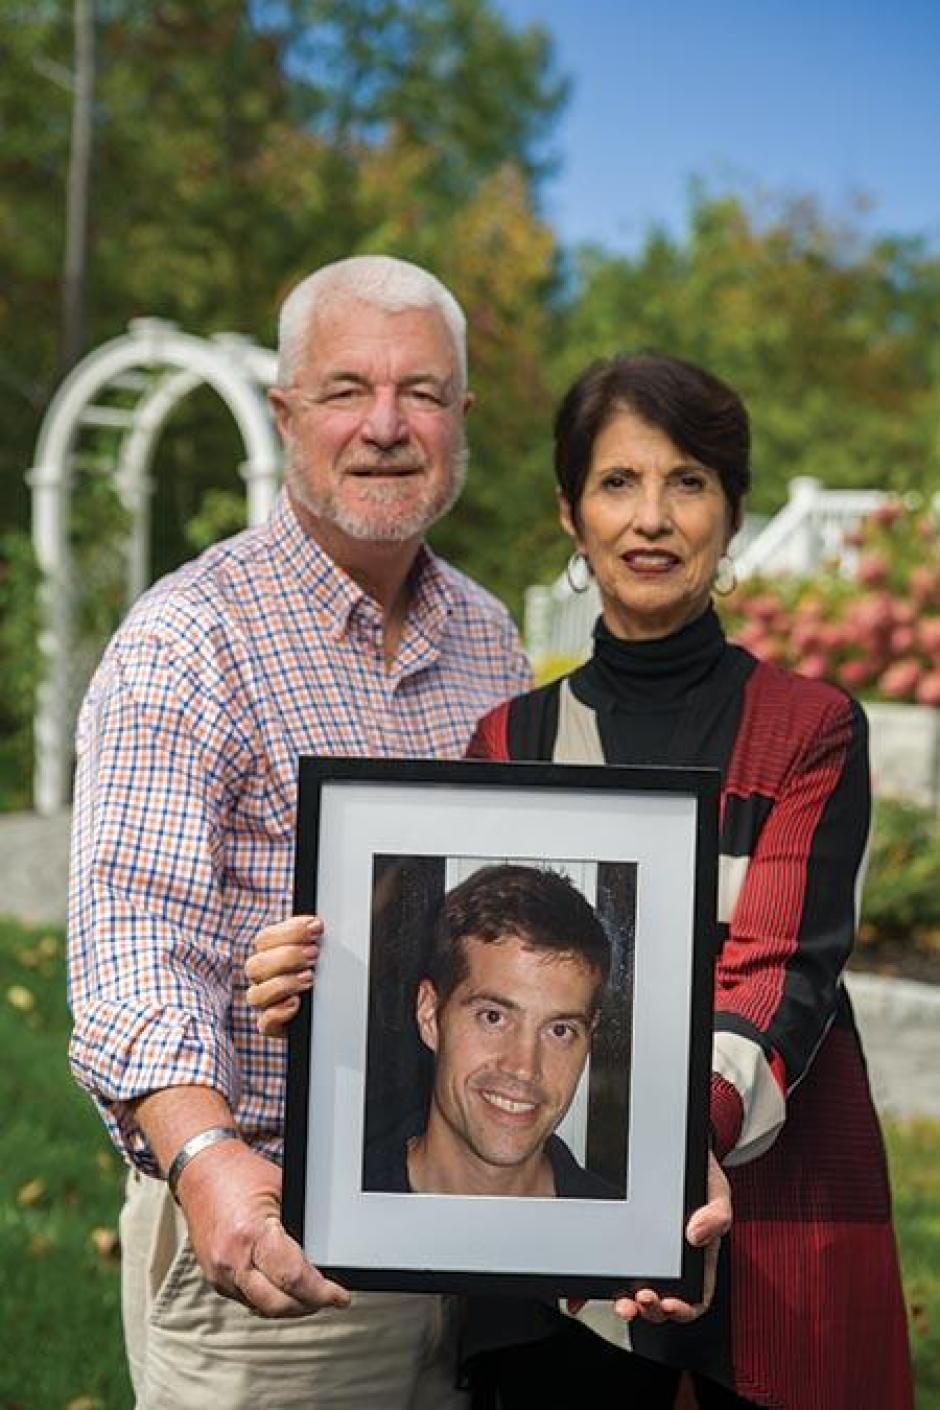 En la imagen, los padres de James Foley posando con un retrato de su hijo Jim.